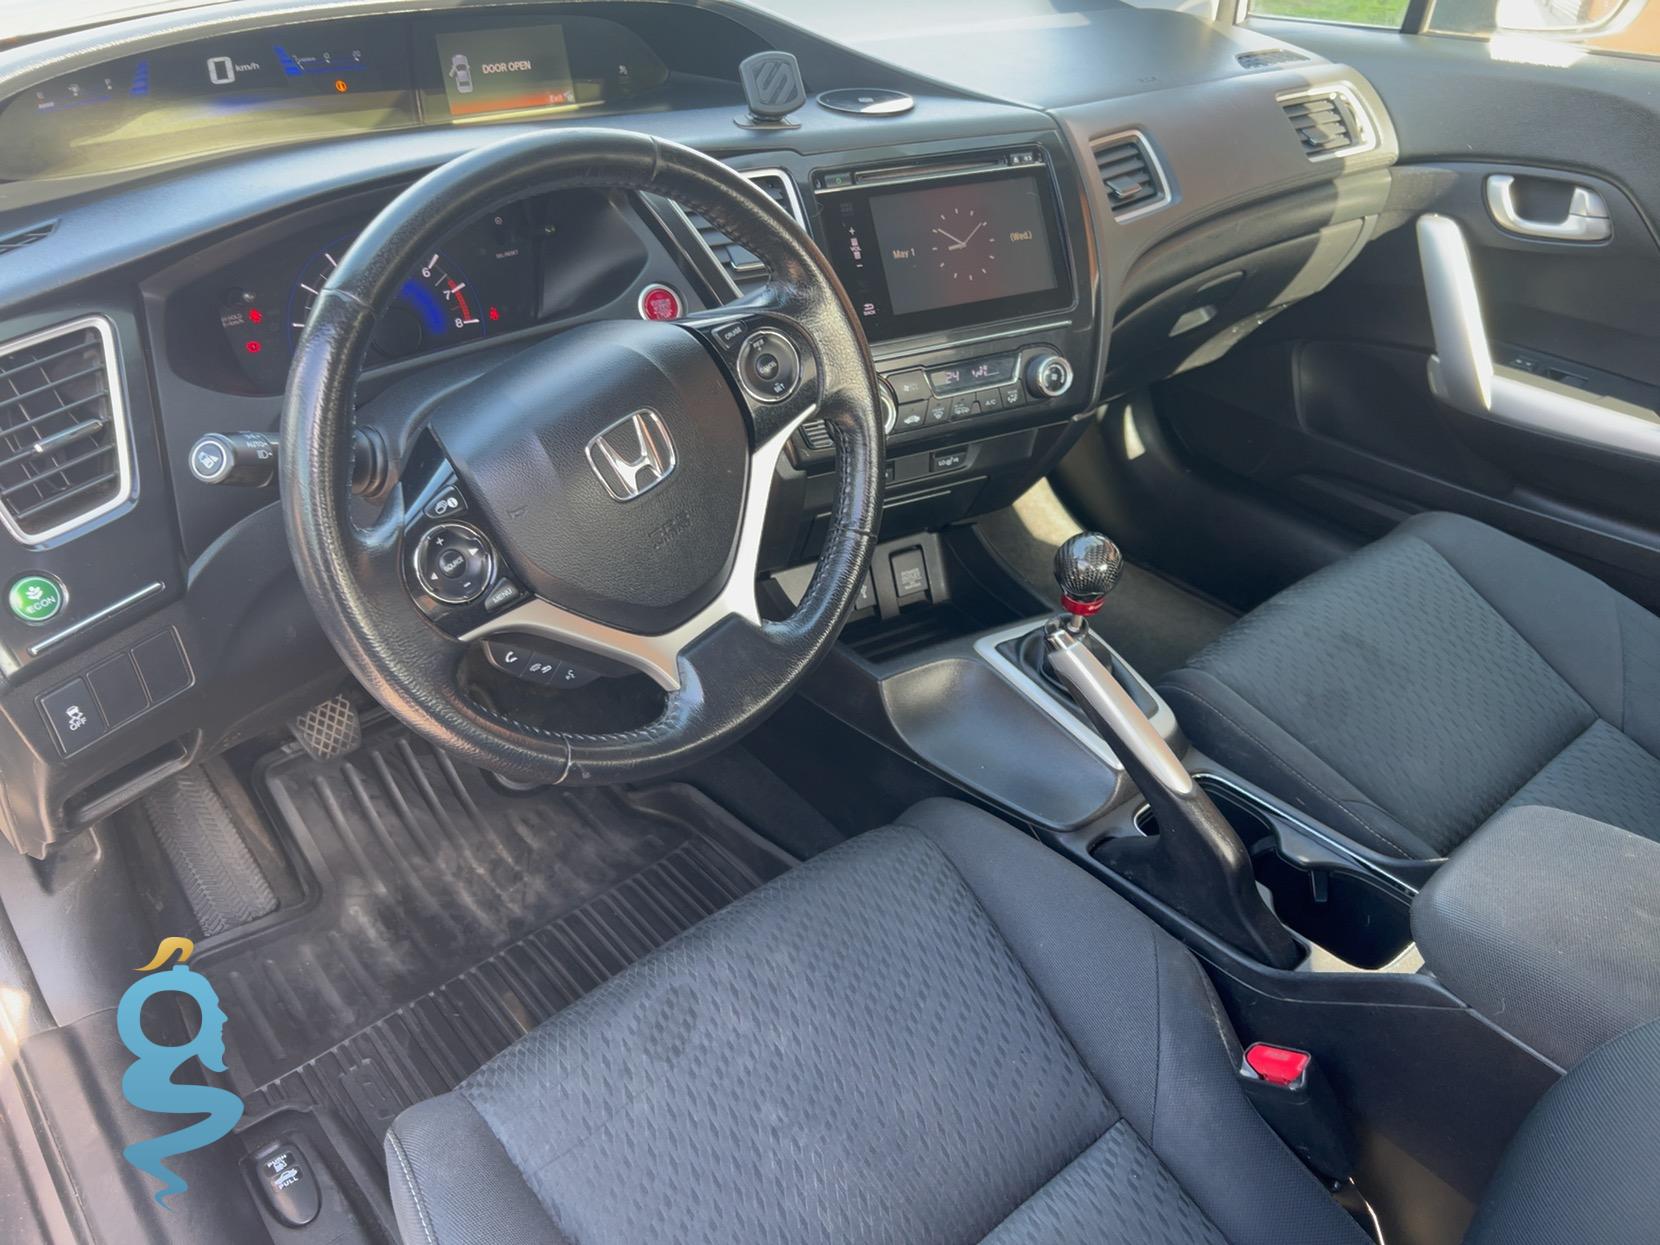 Honda Civic 1.8 LX